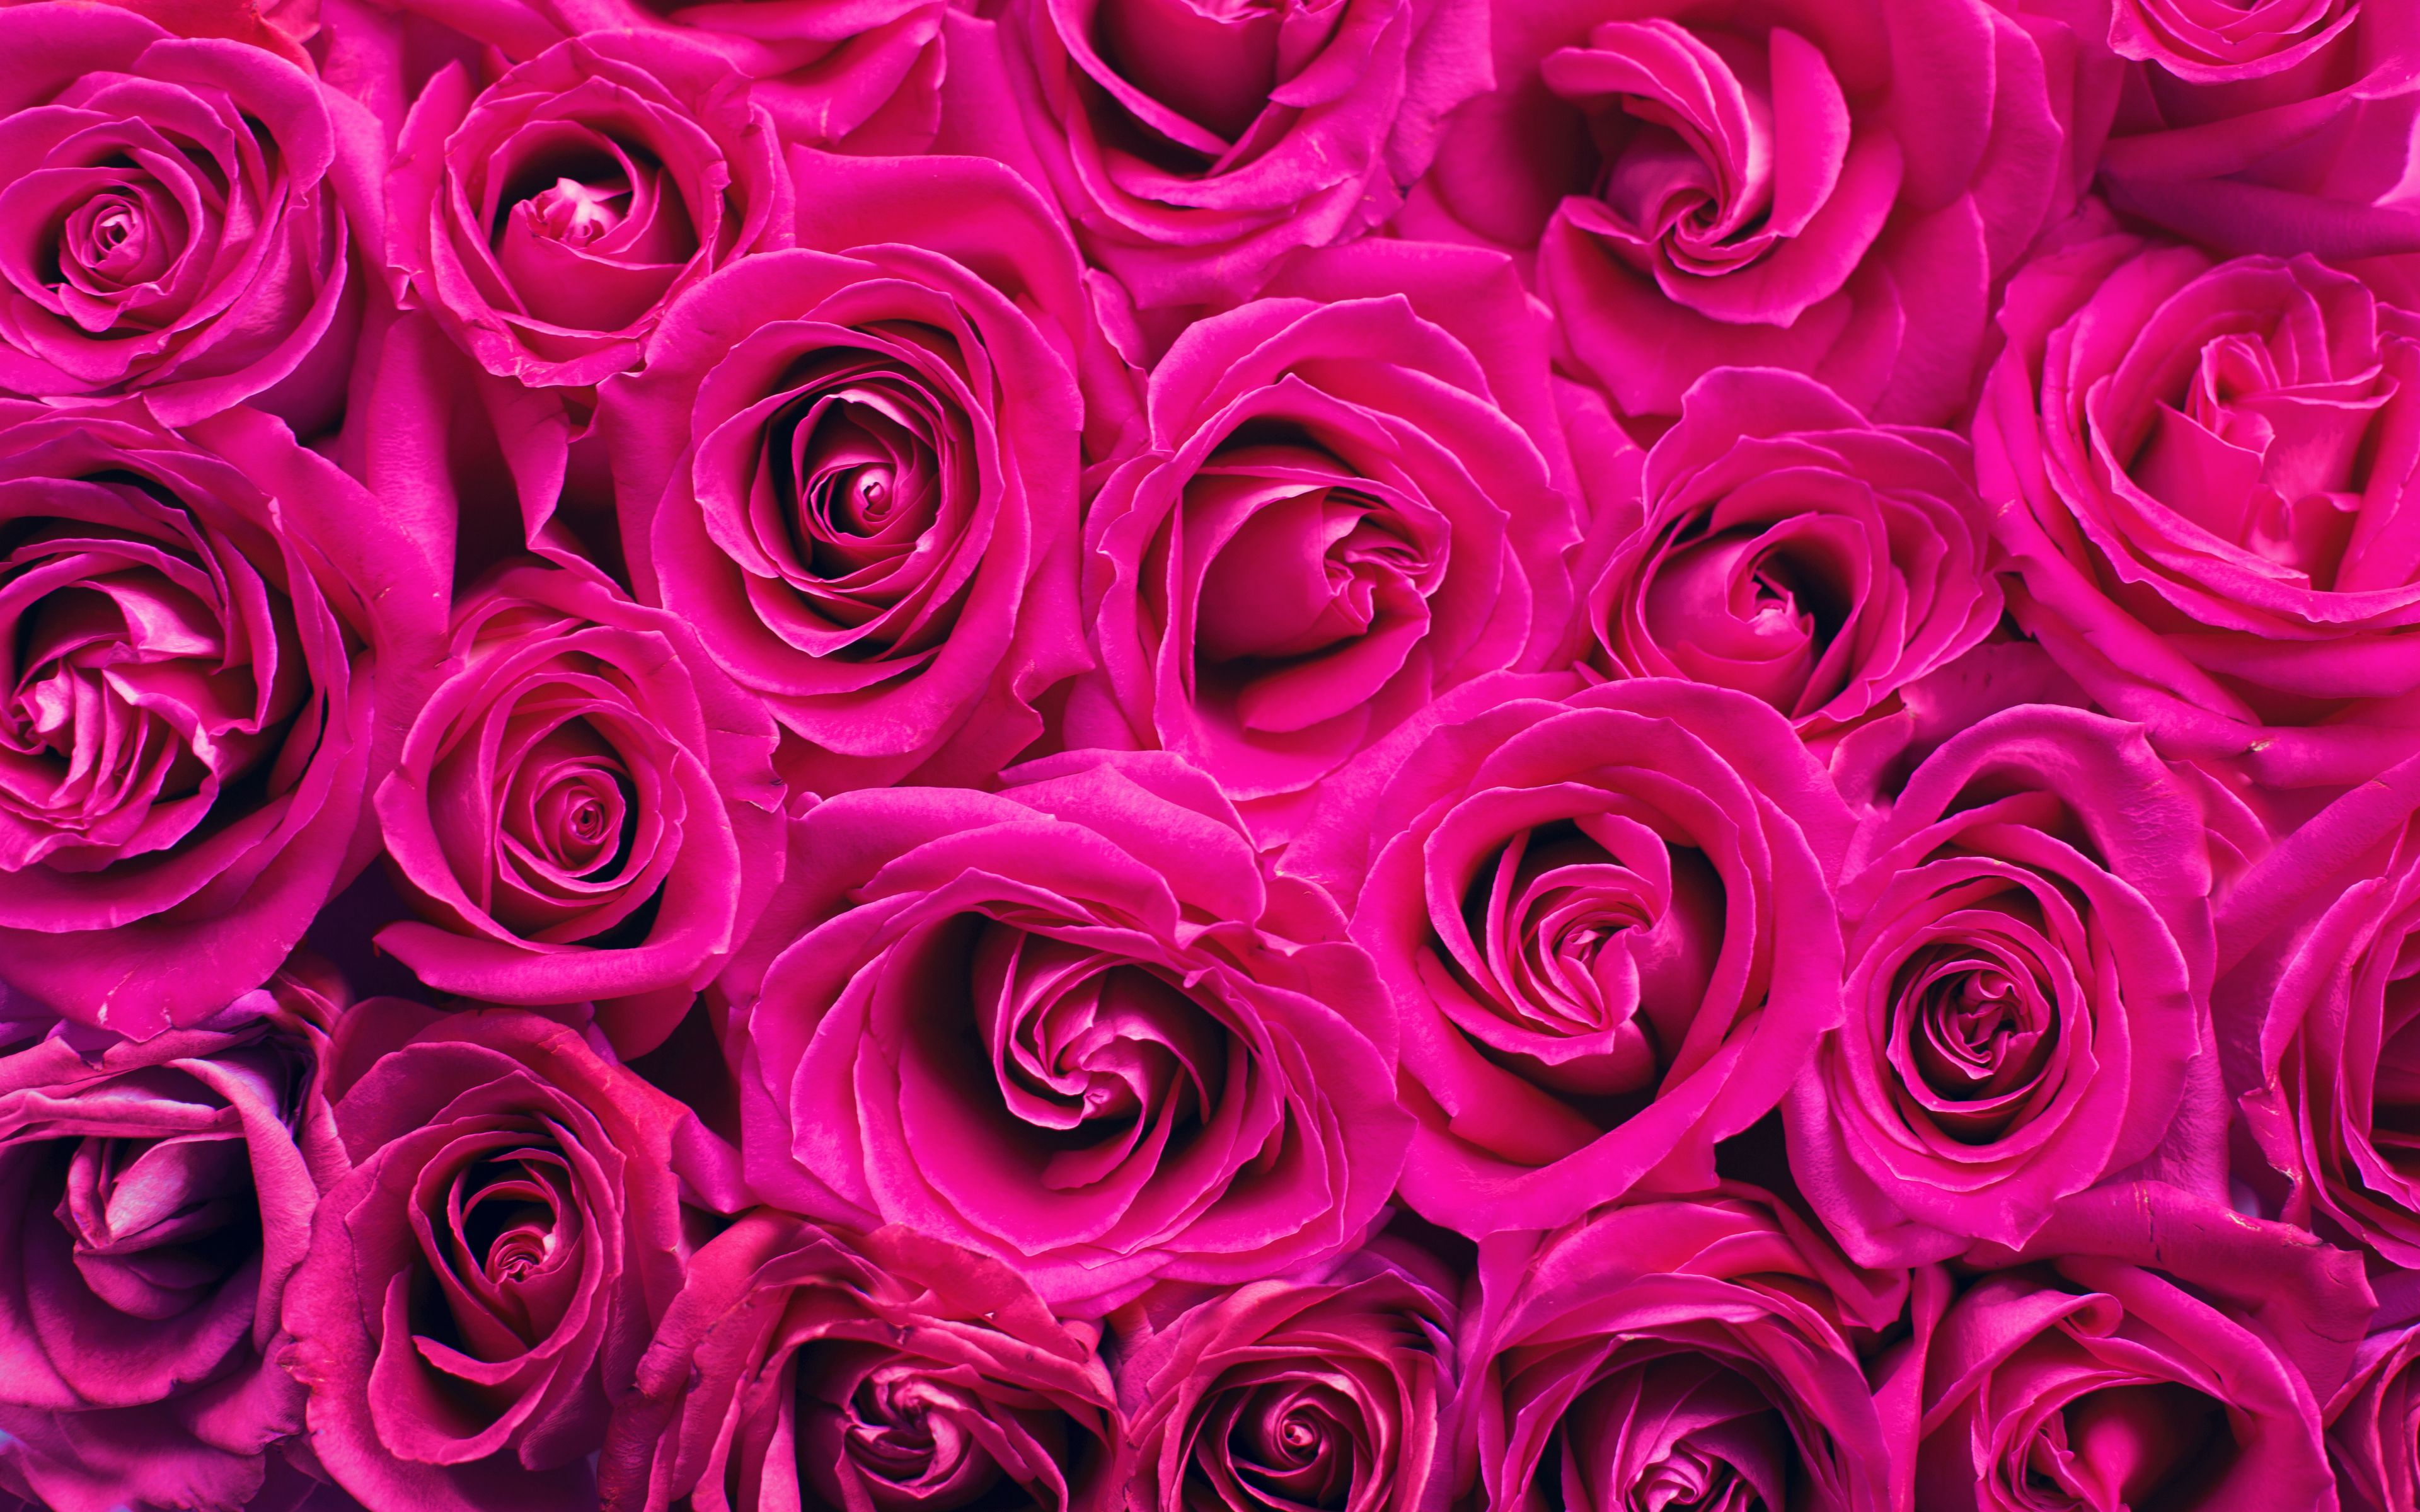 Hoa hồng màu hồng tươi sáng, mềm mại và thơm ngát chắc chắn sẽ tạo nên sự thích thú cho tất cả các tín đồ yêu hoa. Ảnh sẽ giúp bạn thấy được tình yêu lãng mạn và đam mê của con người dành cho loài hoa tuyệt vời này.